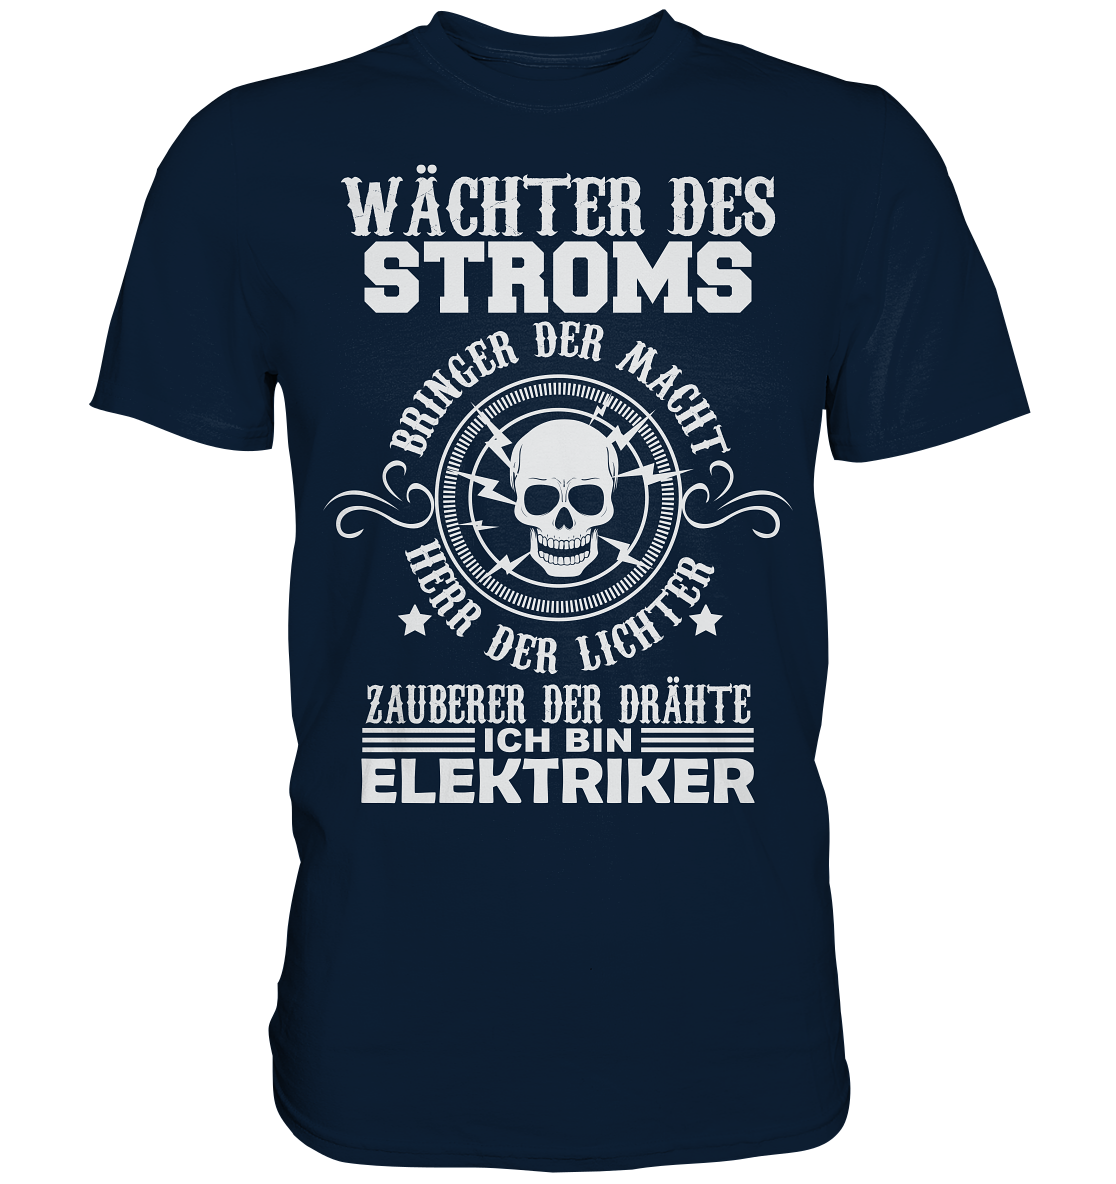 Wächter des Stroms, bringer der Macht, Herr der Lichter, Zauberer der Drähte - ich bin Elektriker - Premium Shirt